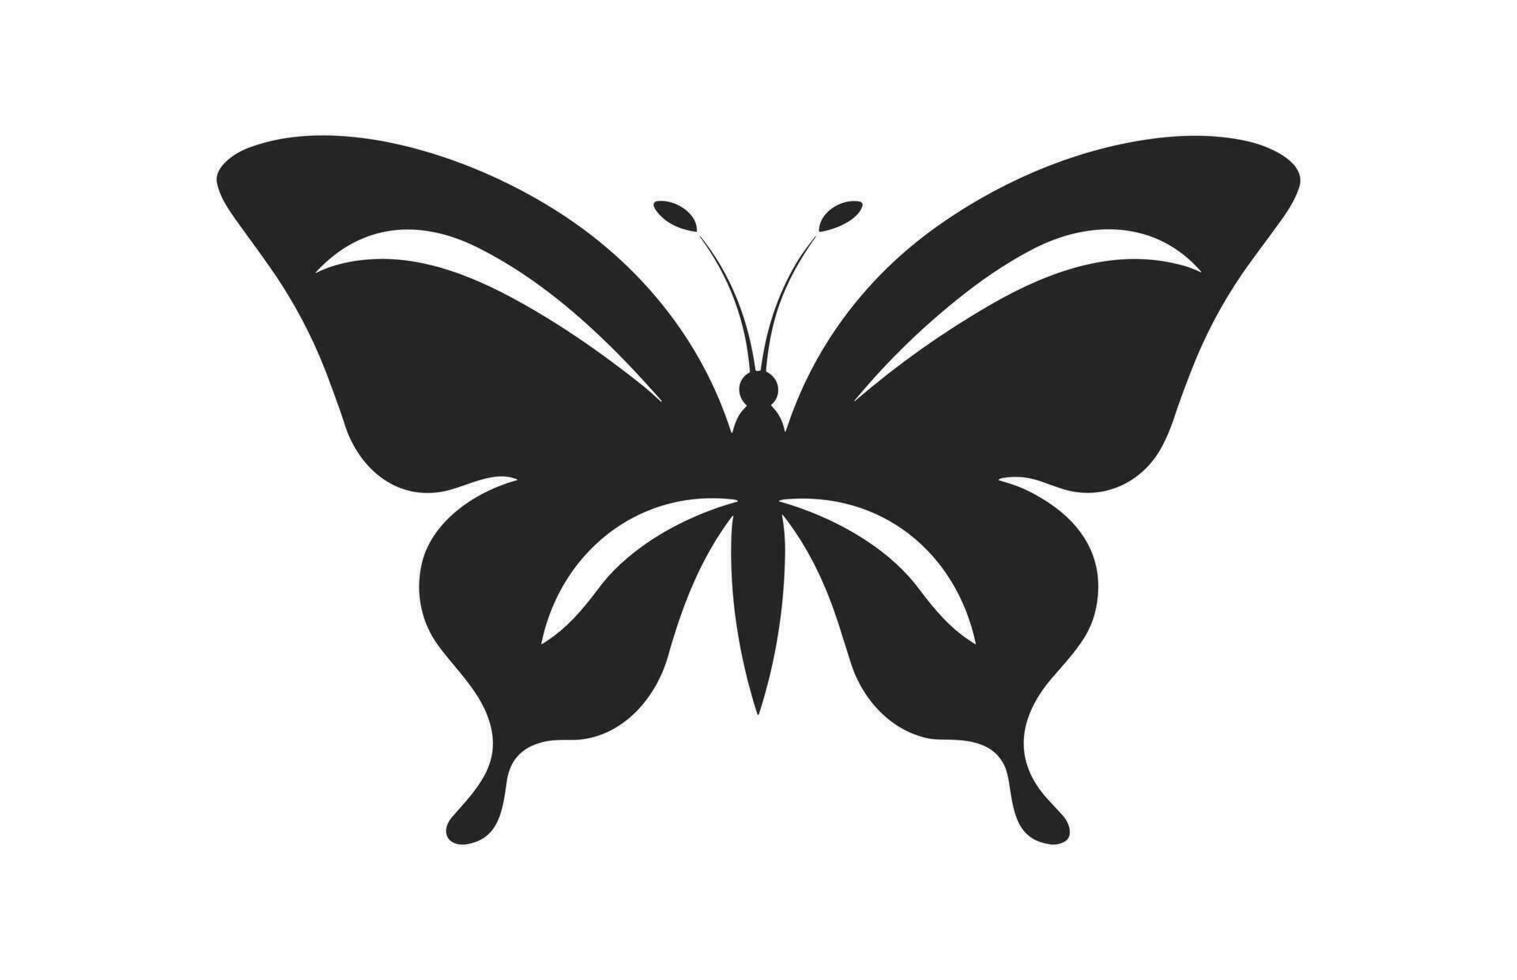 en skön fjäril silhuett isolerat på en vit bakgrund, en monark fjäril vektor